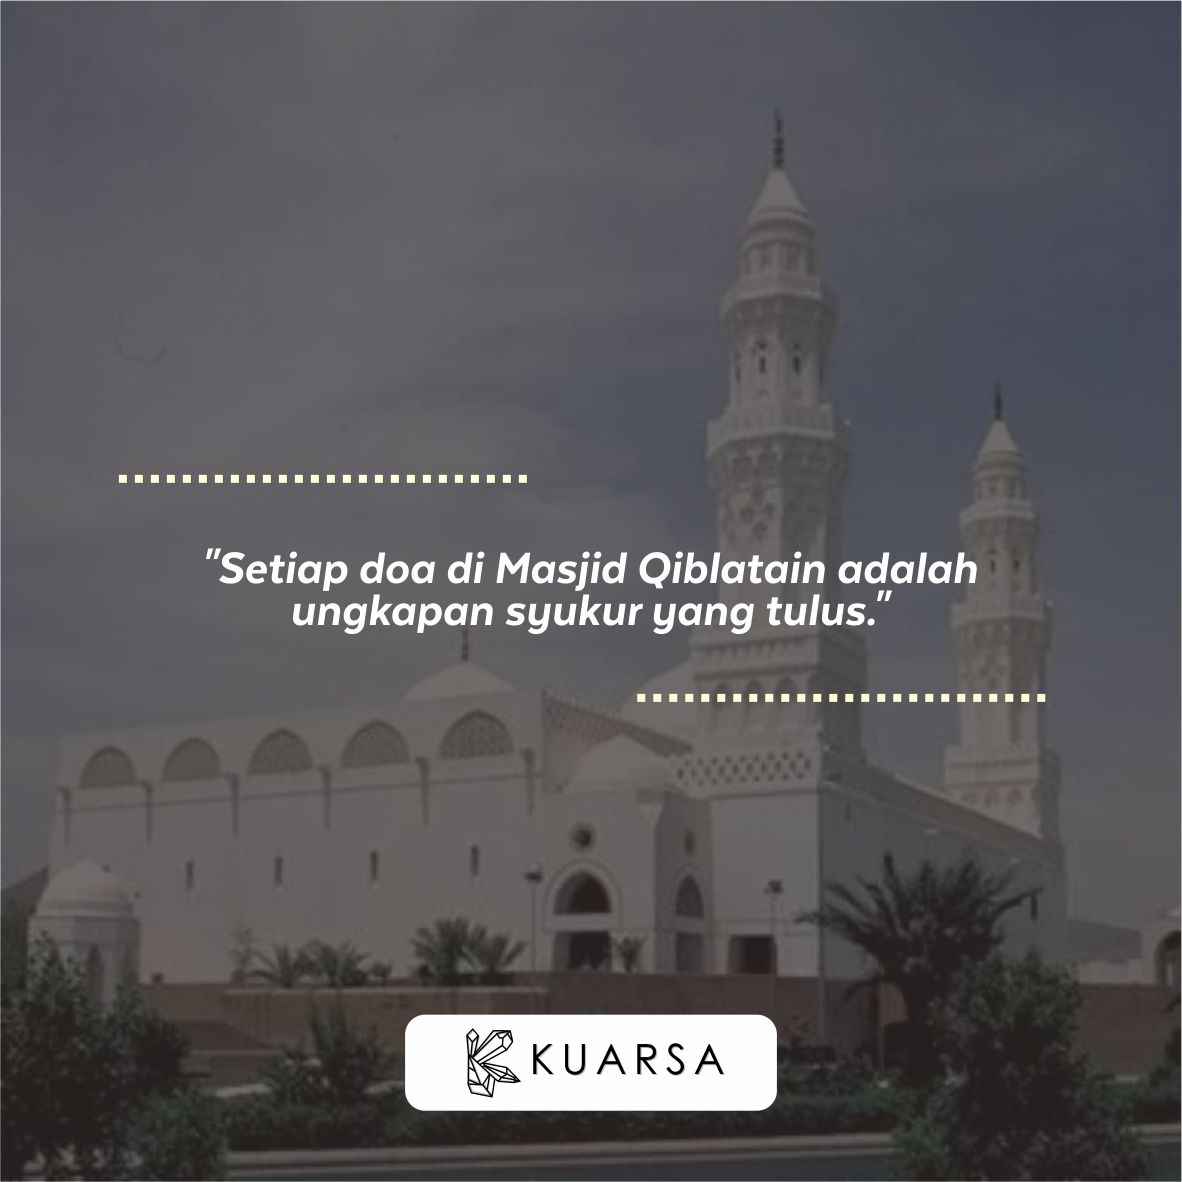 20 Kata-Kata Berkunjung ke Masjid Qiblatain, Quotes Bersyukur Bisa Sholat di Masjid Qiblatain